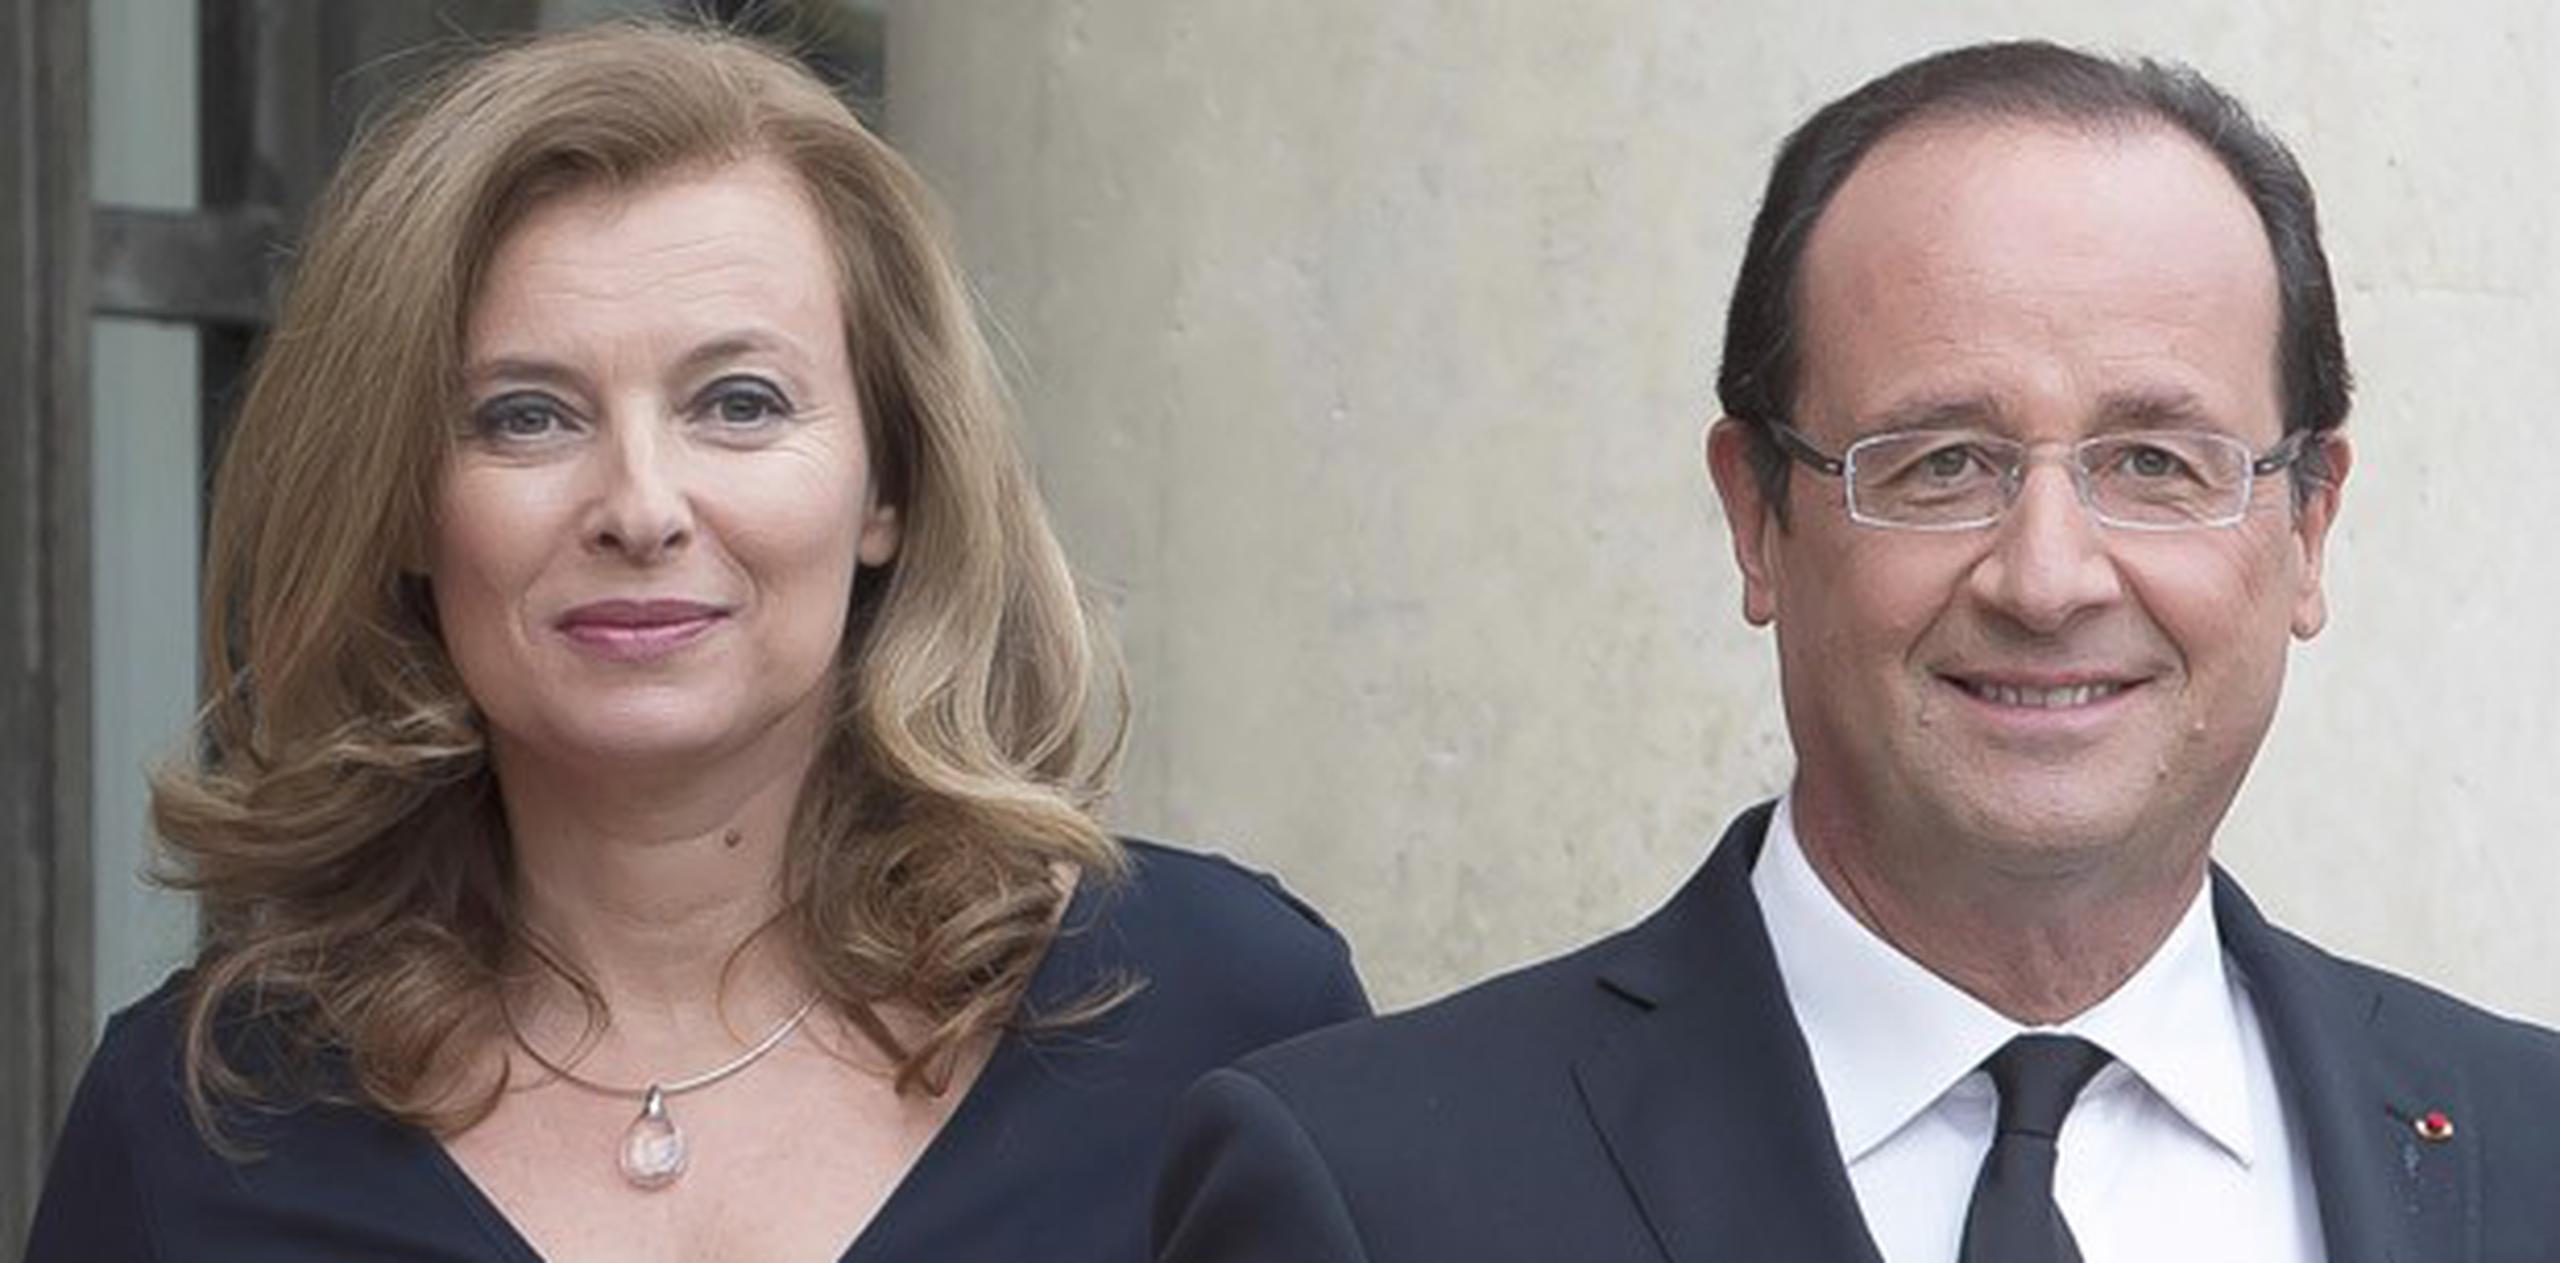 Hollande y Valerie Trierweiler tuvieron una relación de siete años. (Archivo / EFE)